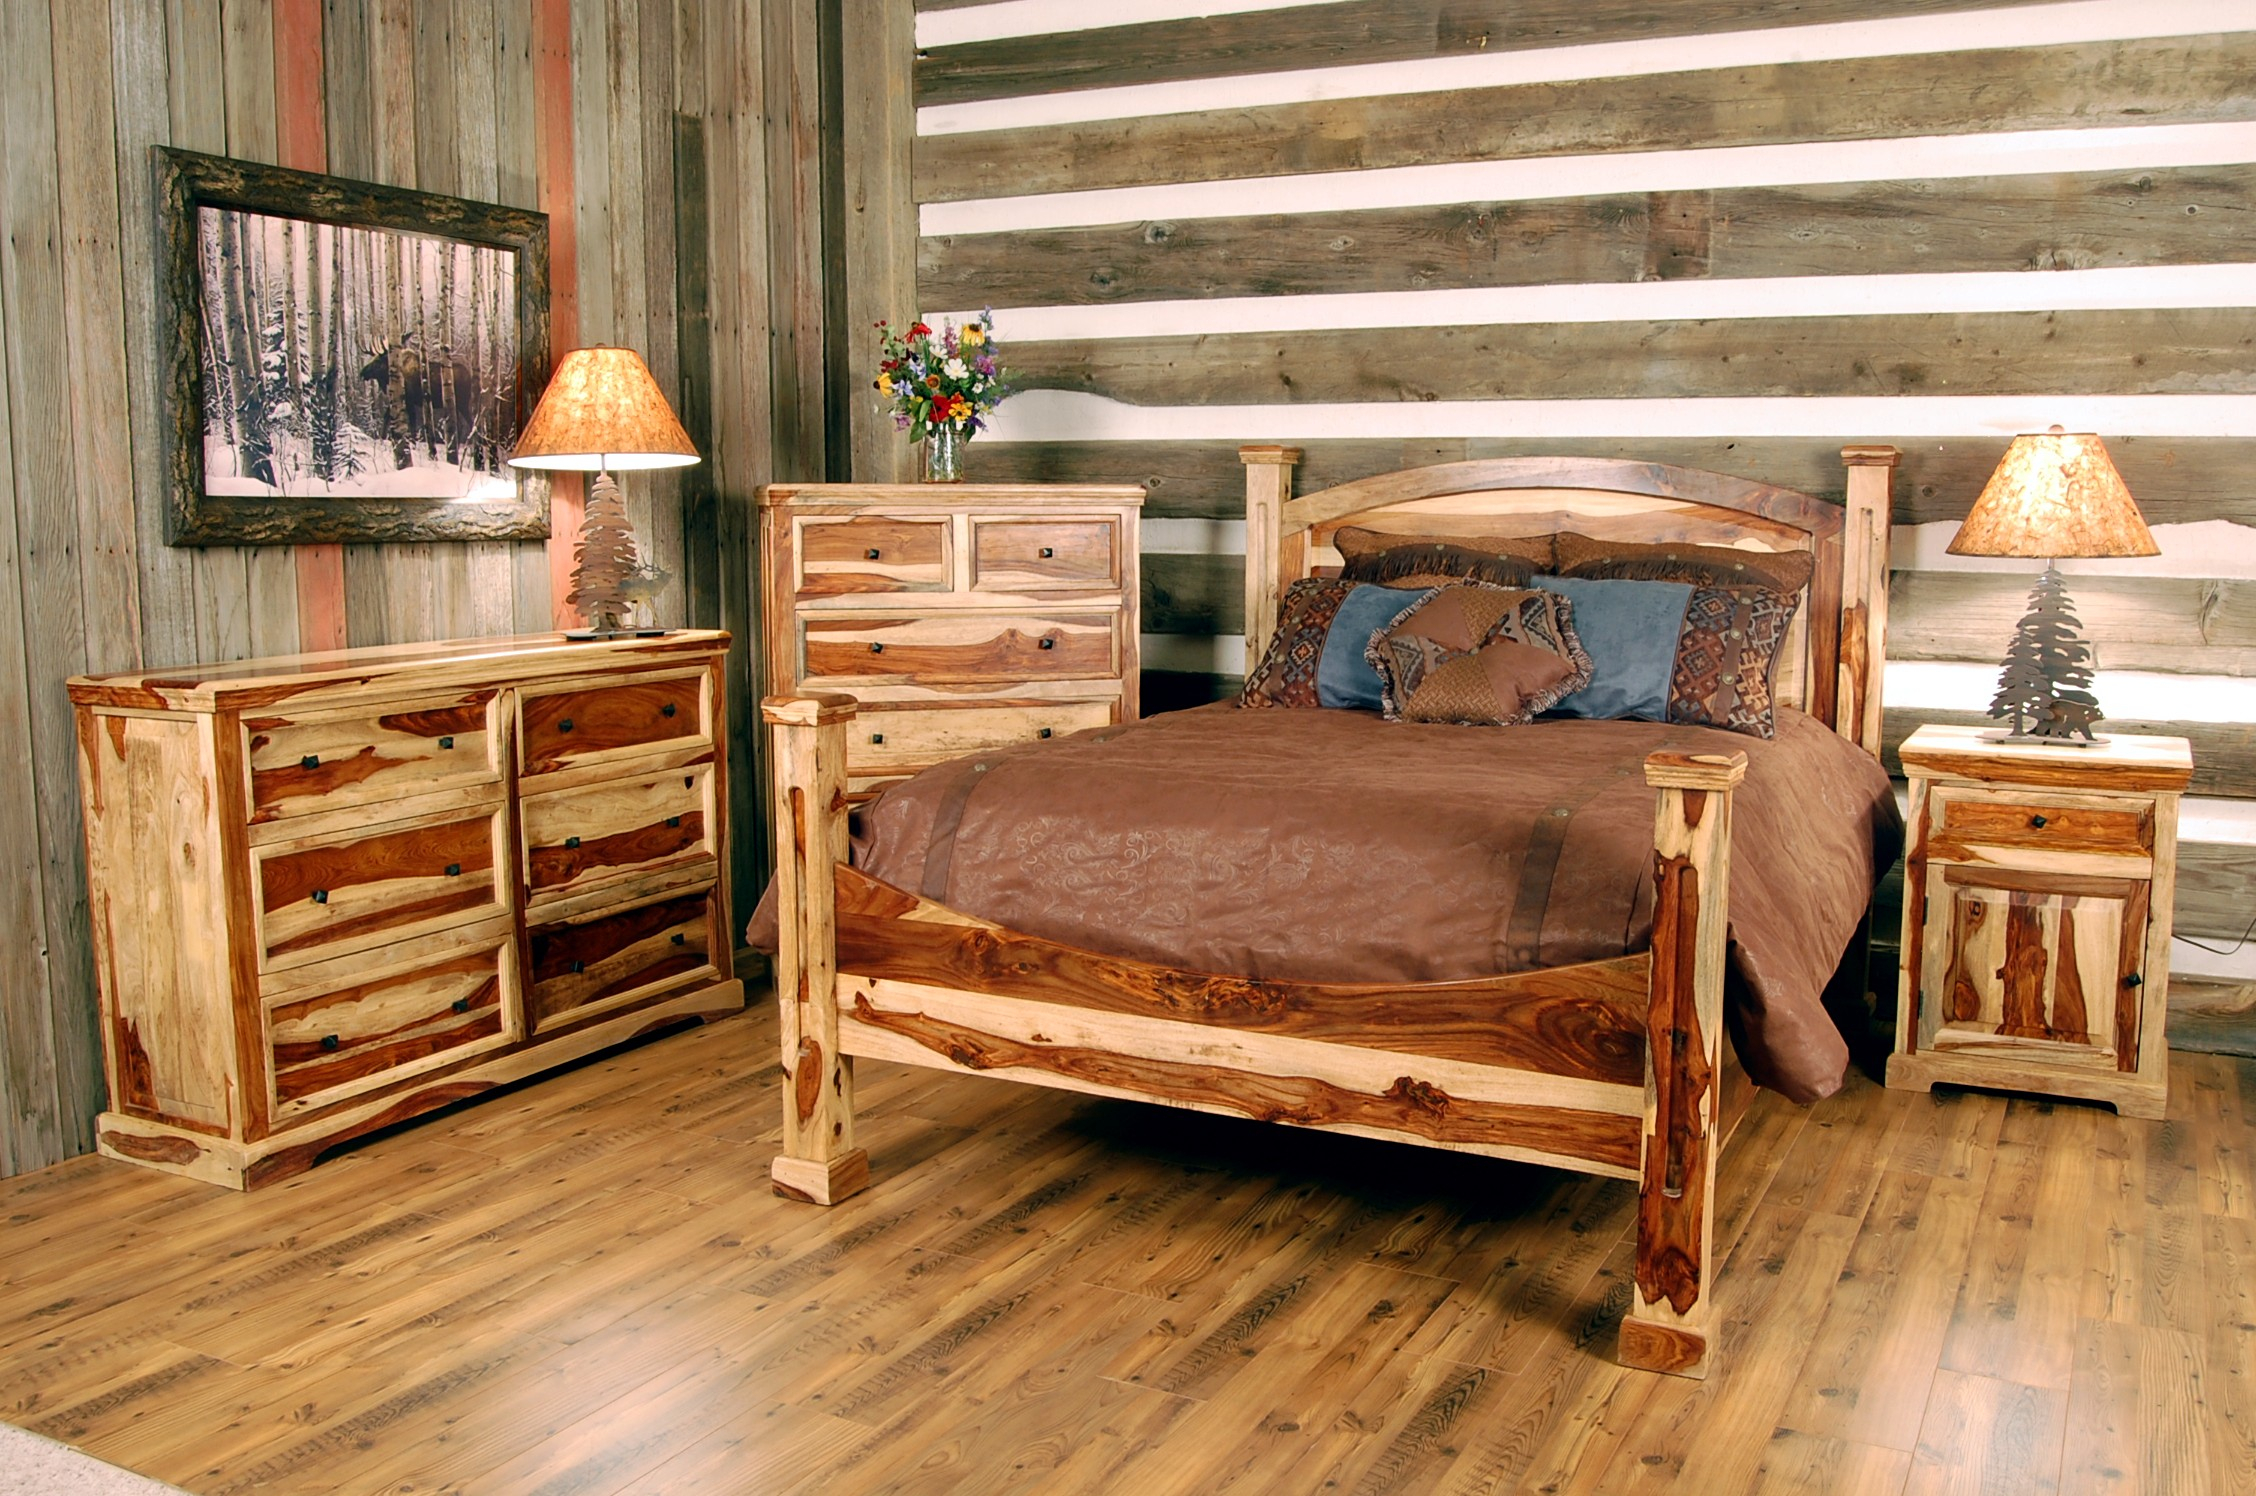 Likable Cabin Creek Bedroom Furniture Mansion Storage Sets for proportions 2256 X 1496